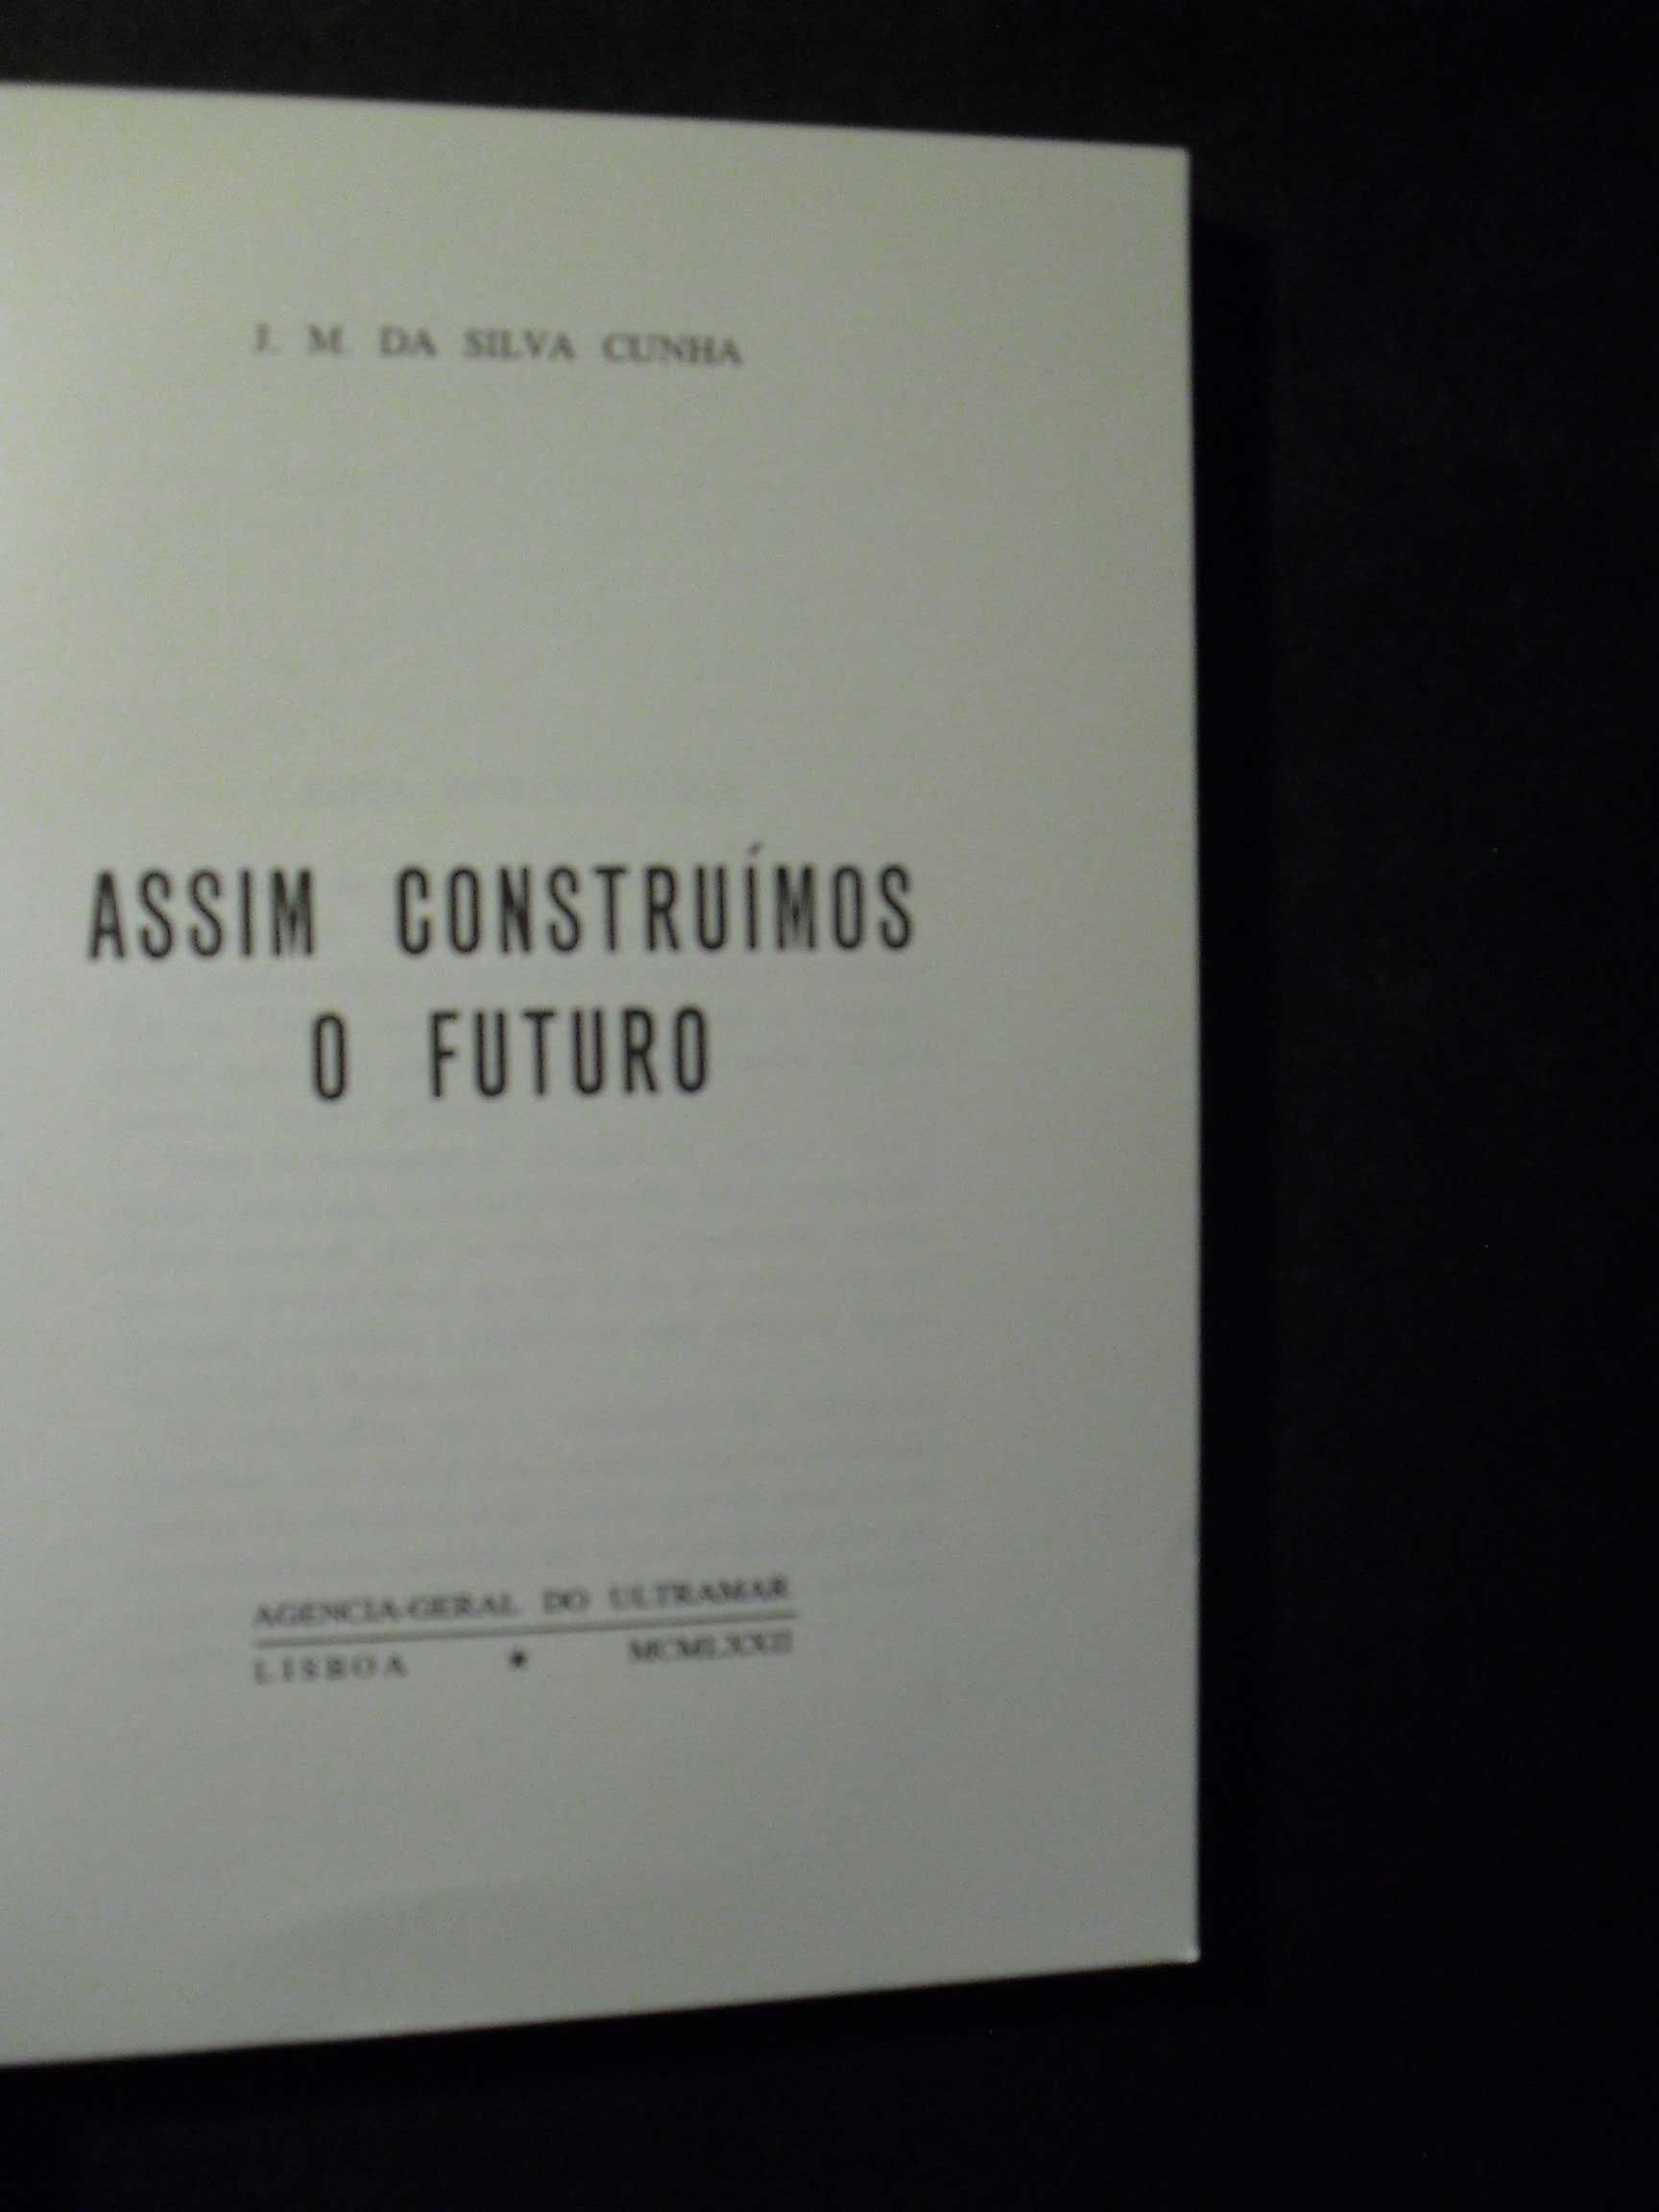 Cunha (J.M Silva);Assim Construimos o Futuro